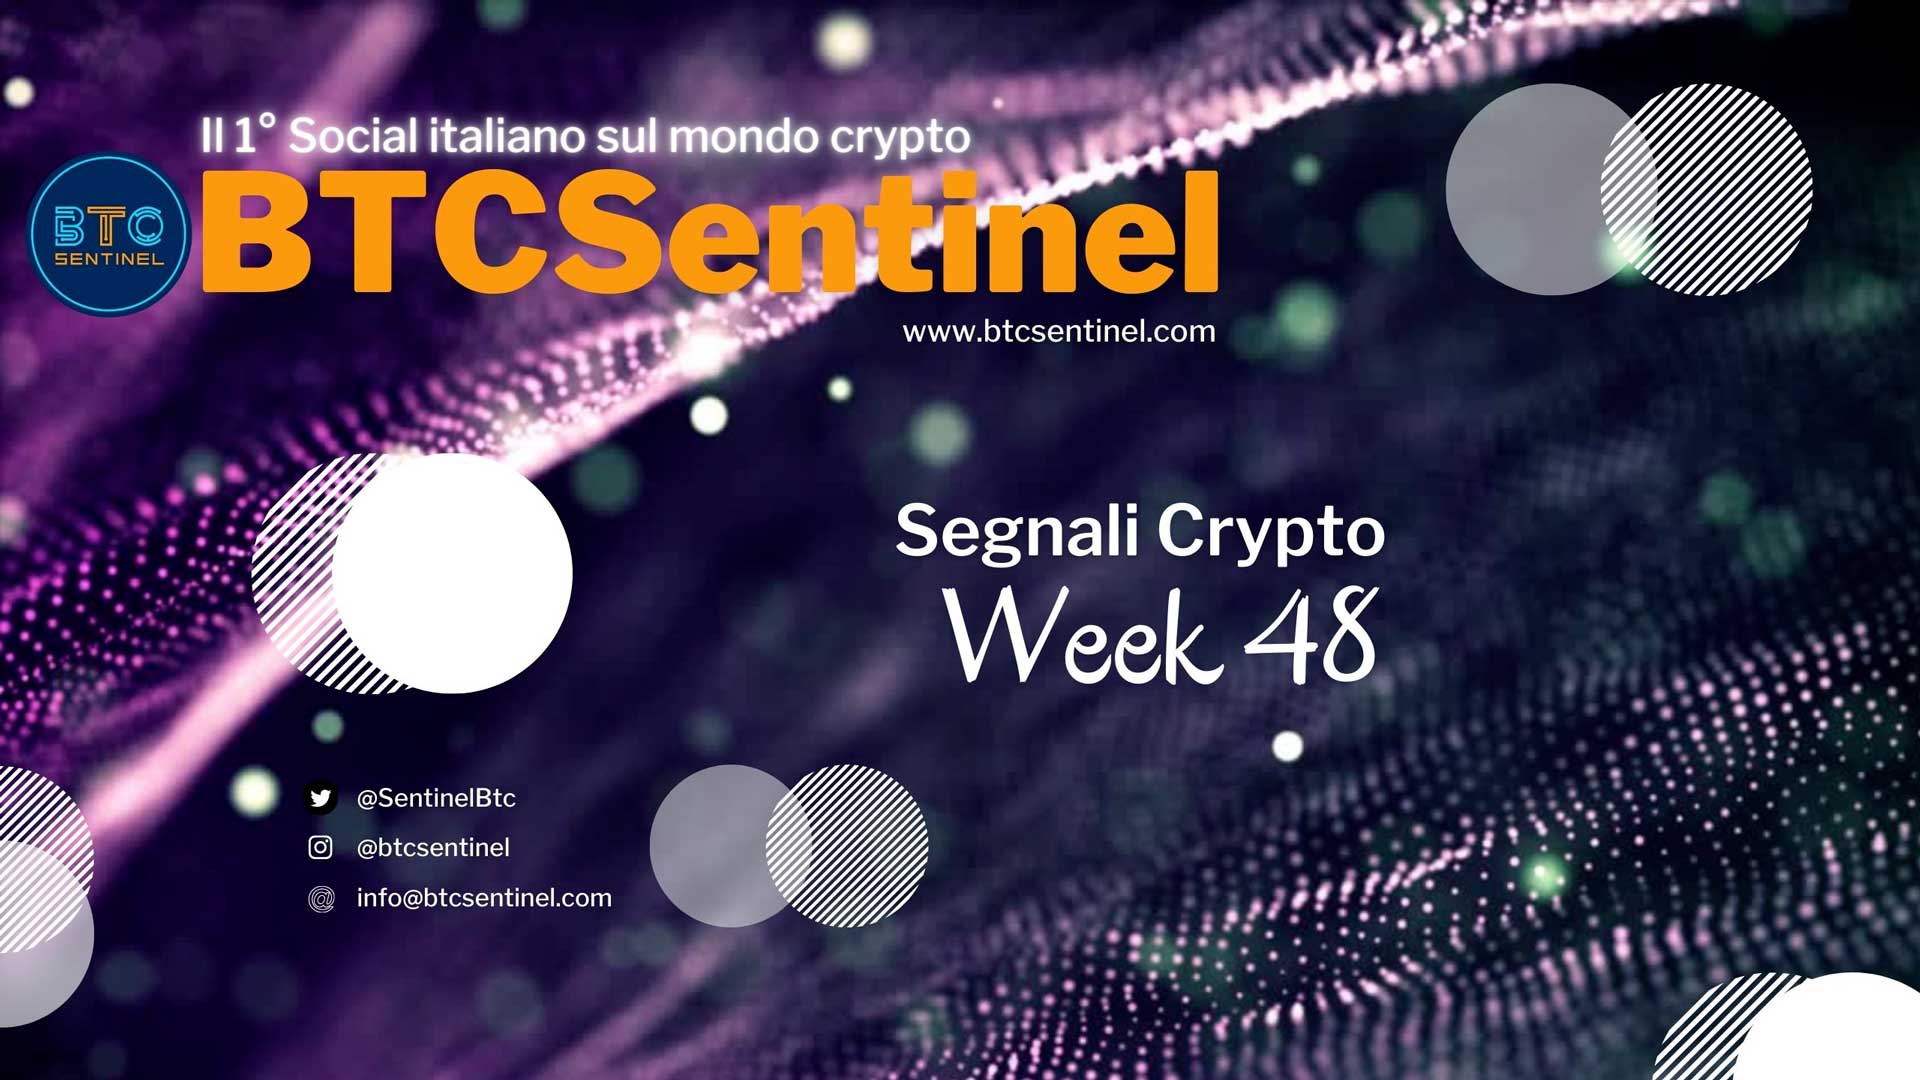 Parliamo della settimana nel mondo crypto: questa ore 20.00, Segnali Crypto Week 48